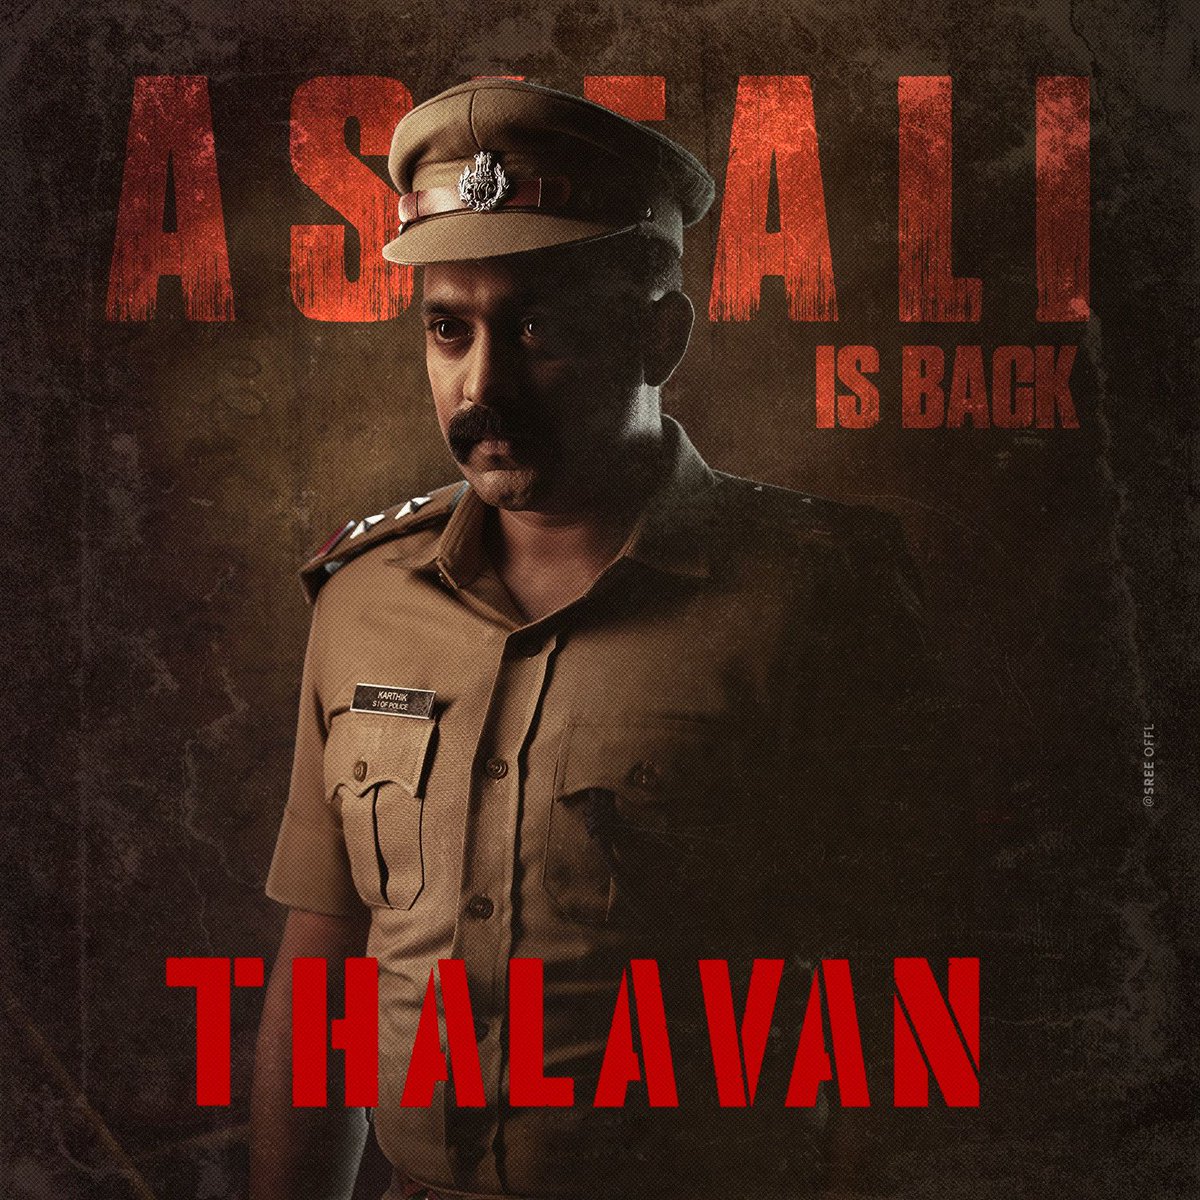 Career highest WW Grosser Loading for #AsifAli #Thalavan